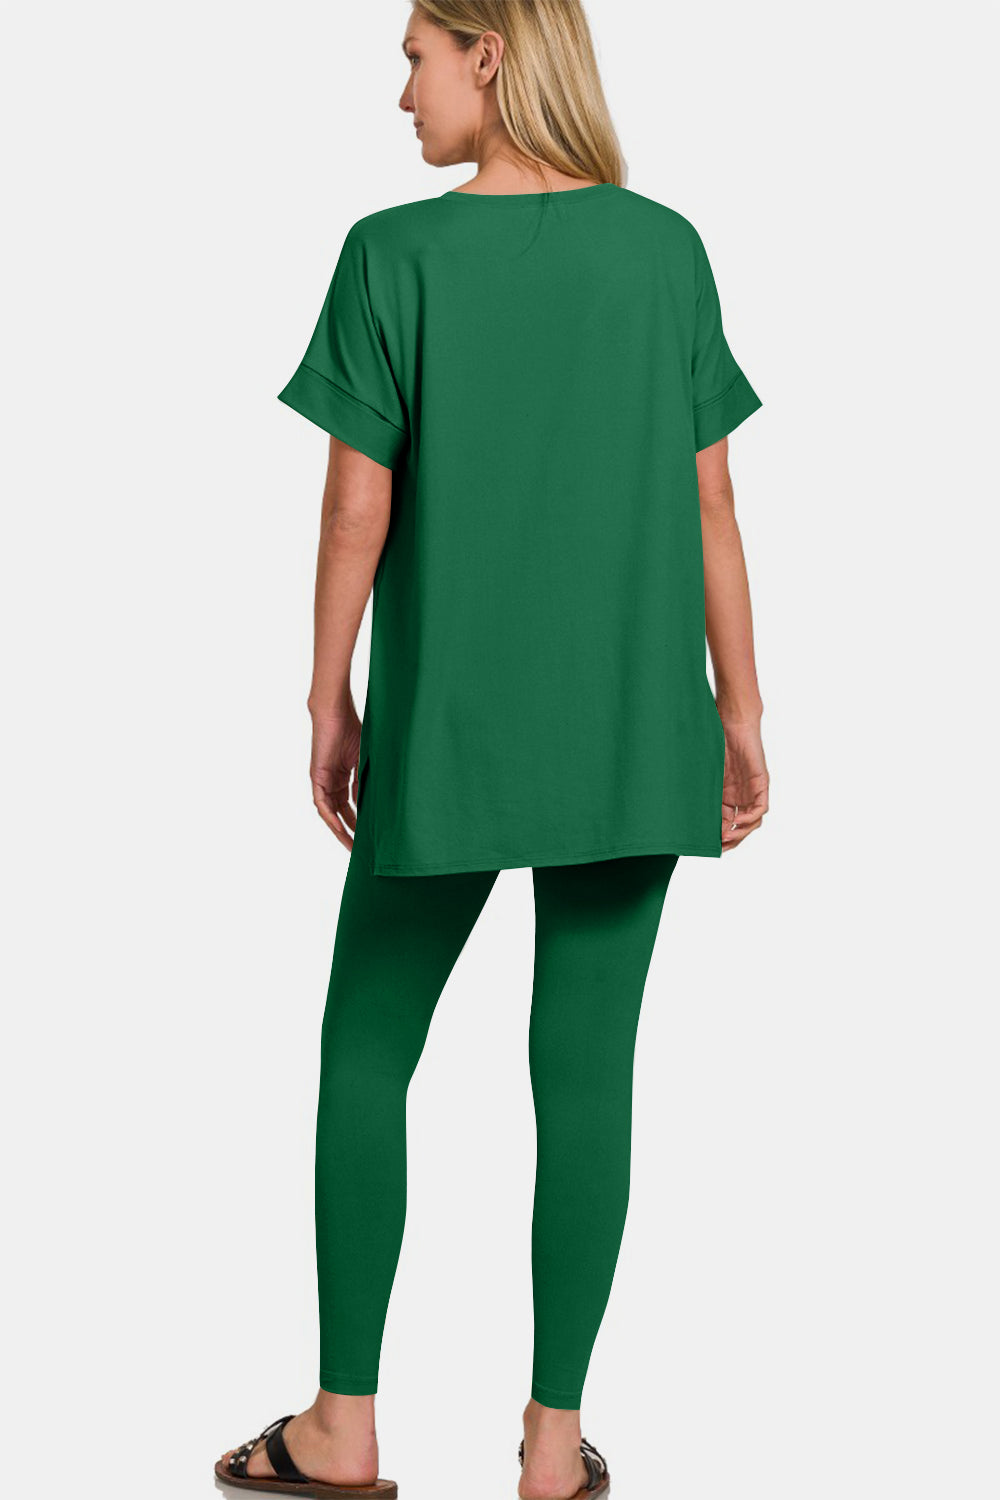 Zenana Dark Green V-Neck Rolled Short Sleeve T-Shirt and Leggings Lounge Set Trendsi